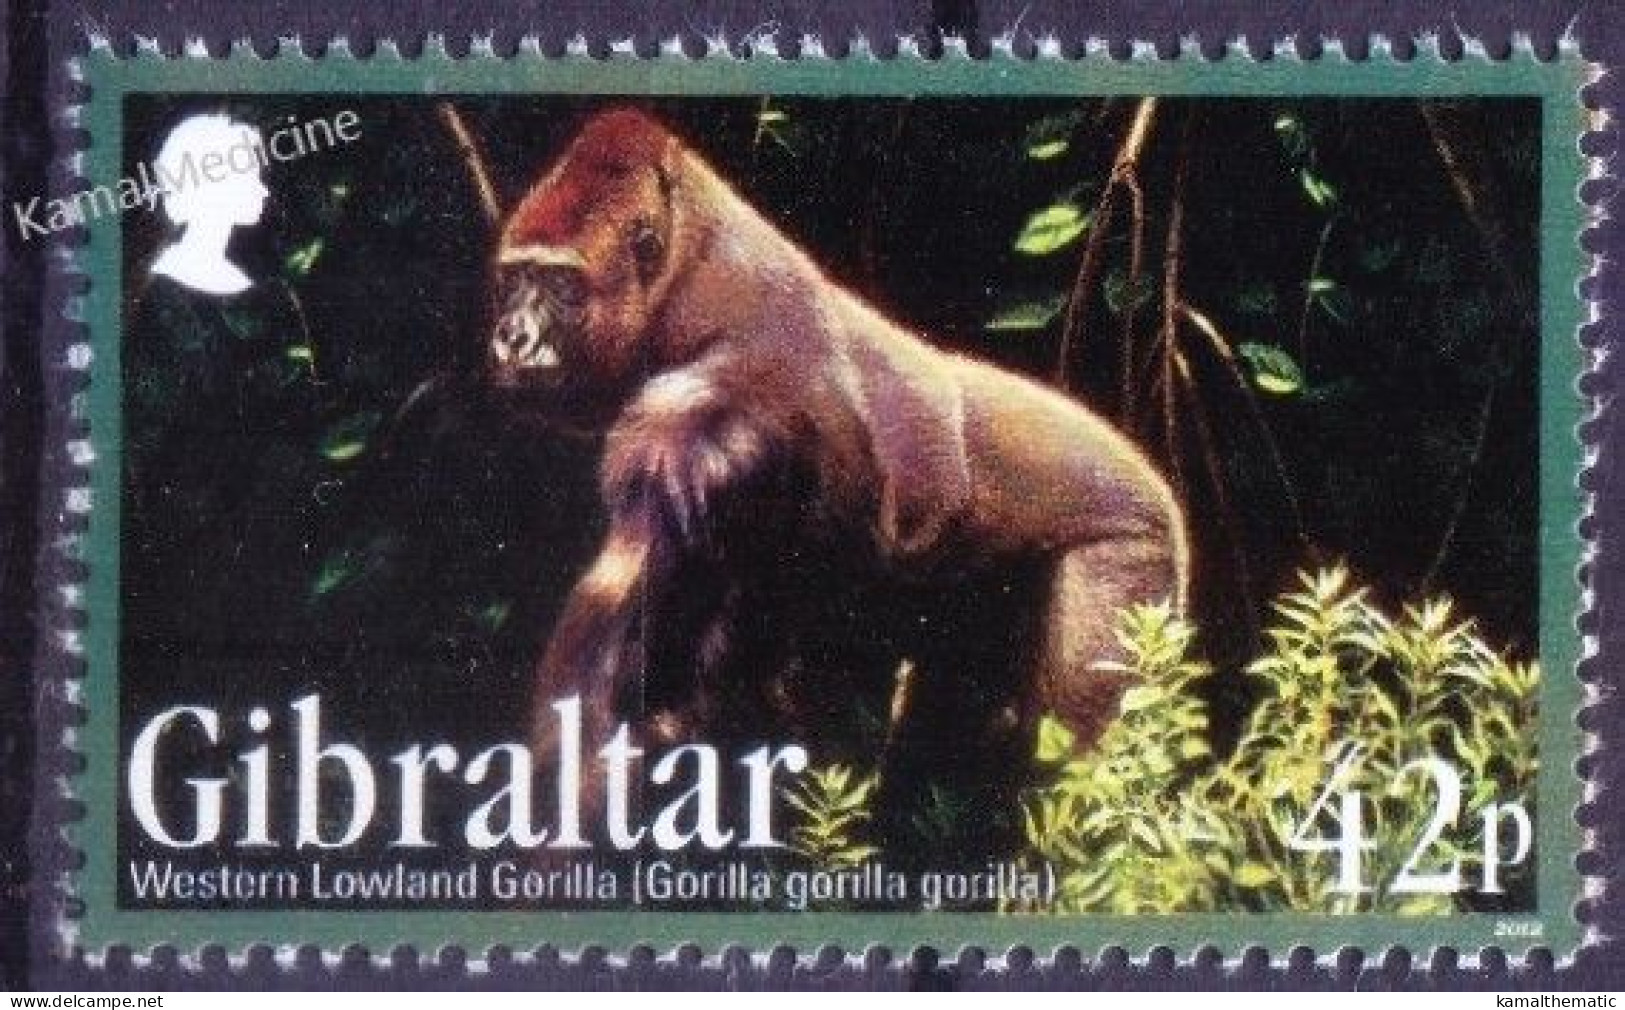 Gibraltar 2012 MNH, Western Lowland Gorilla, Monkeys Wild Animals - Gorilas